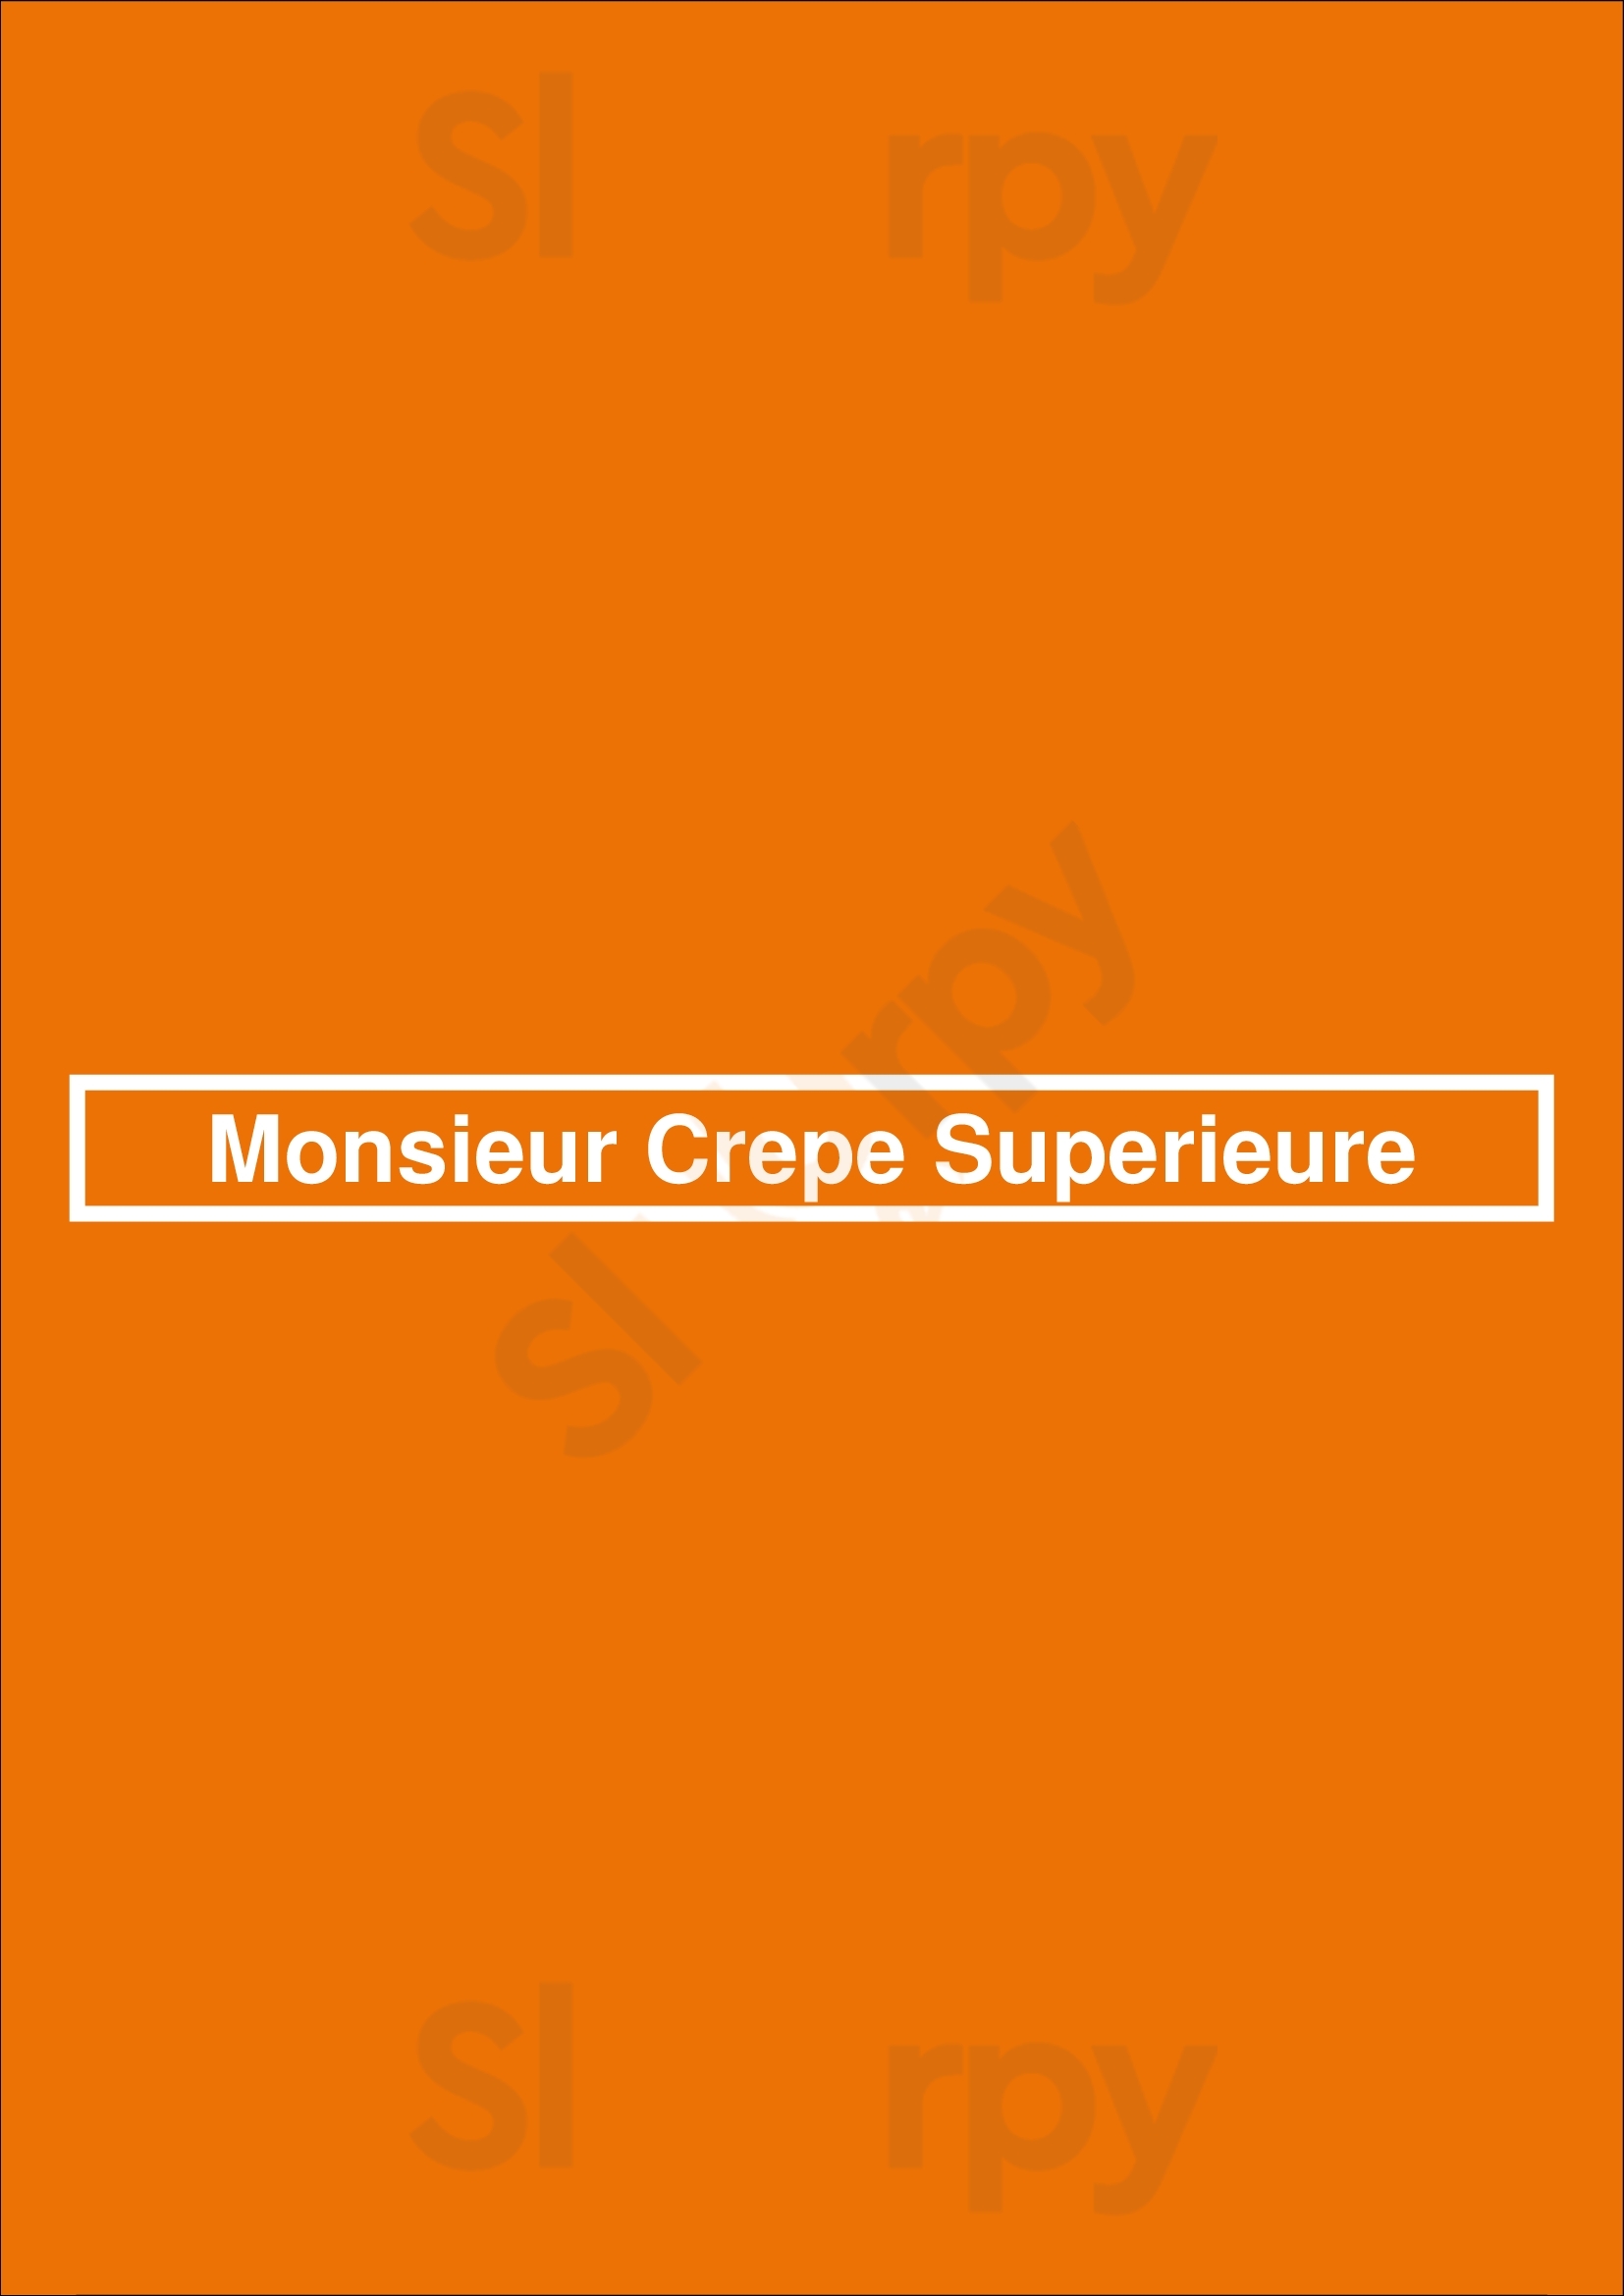 Monsieur Crepe Superieure St. Catharines Menu - 1